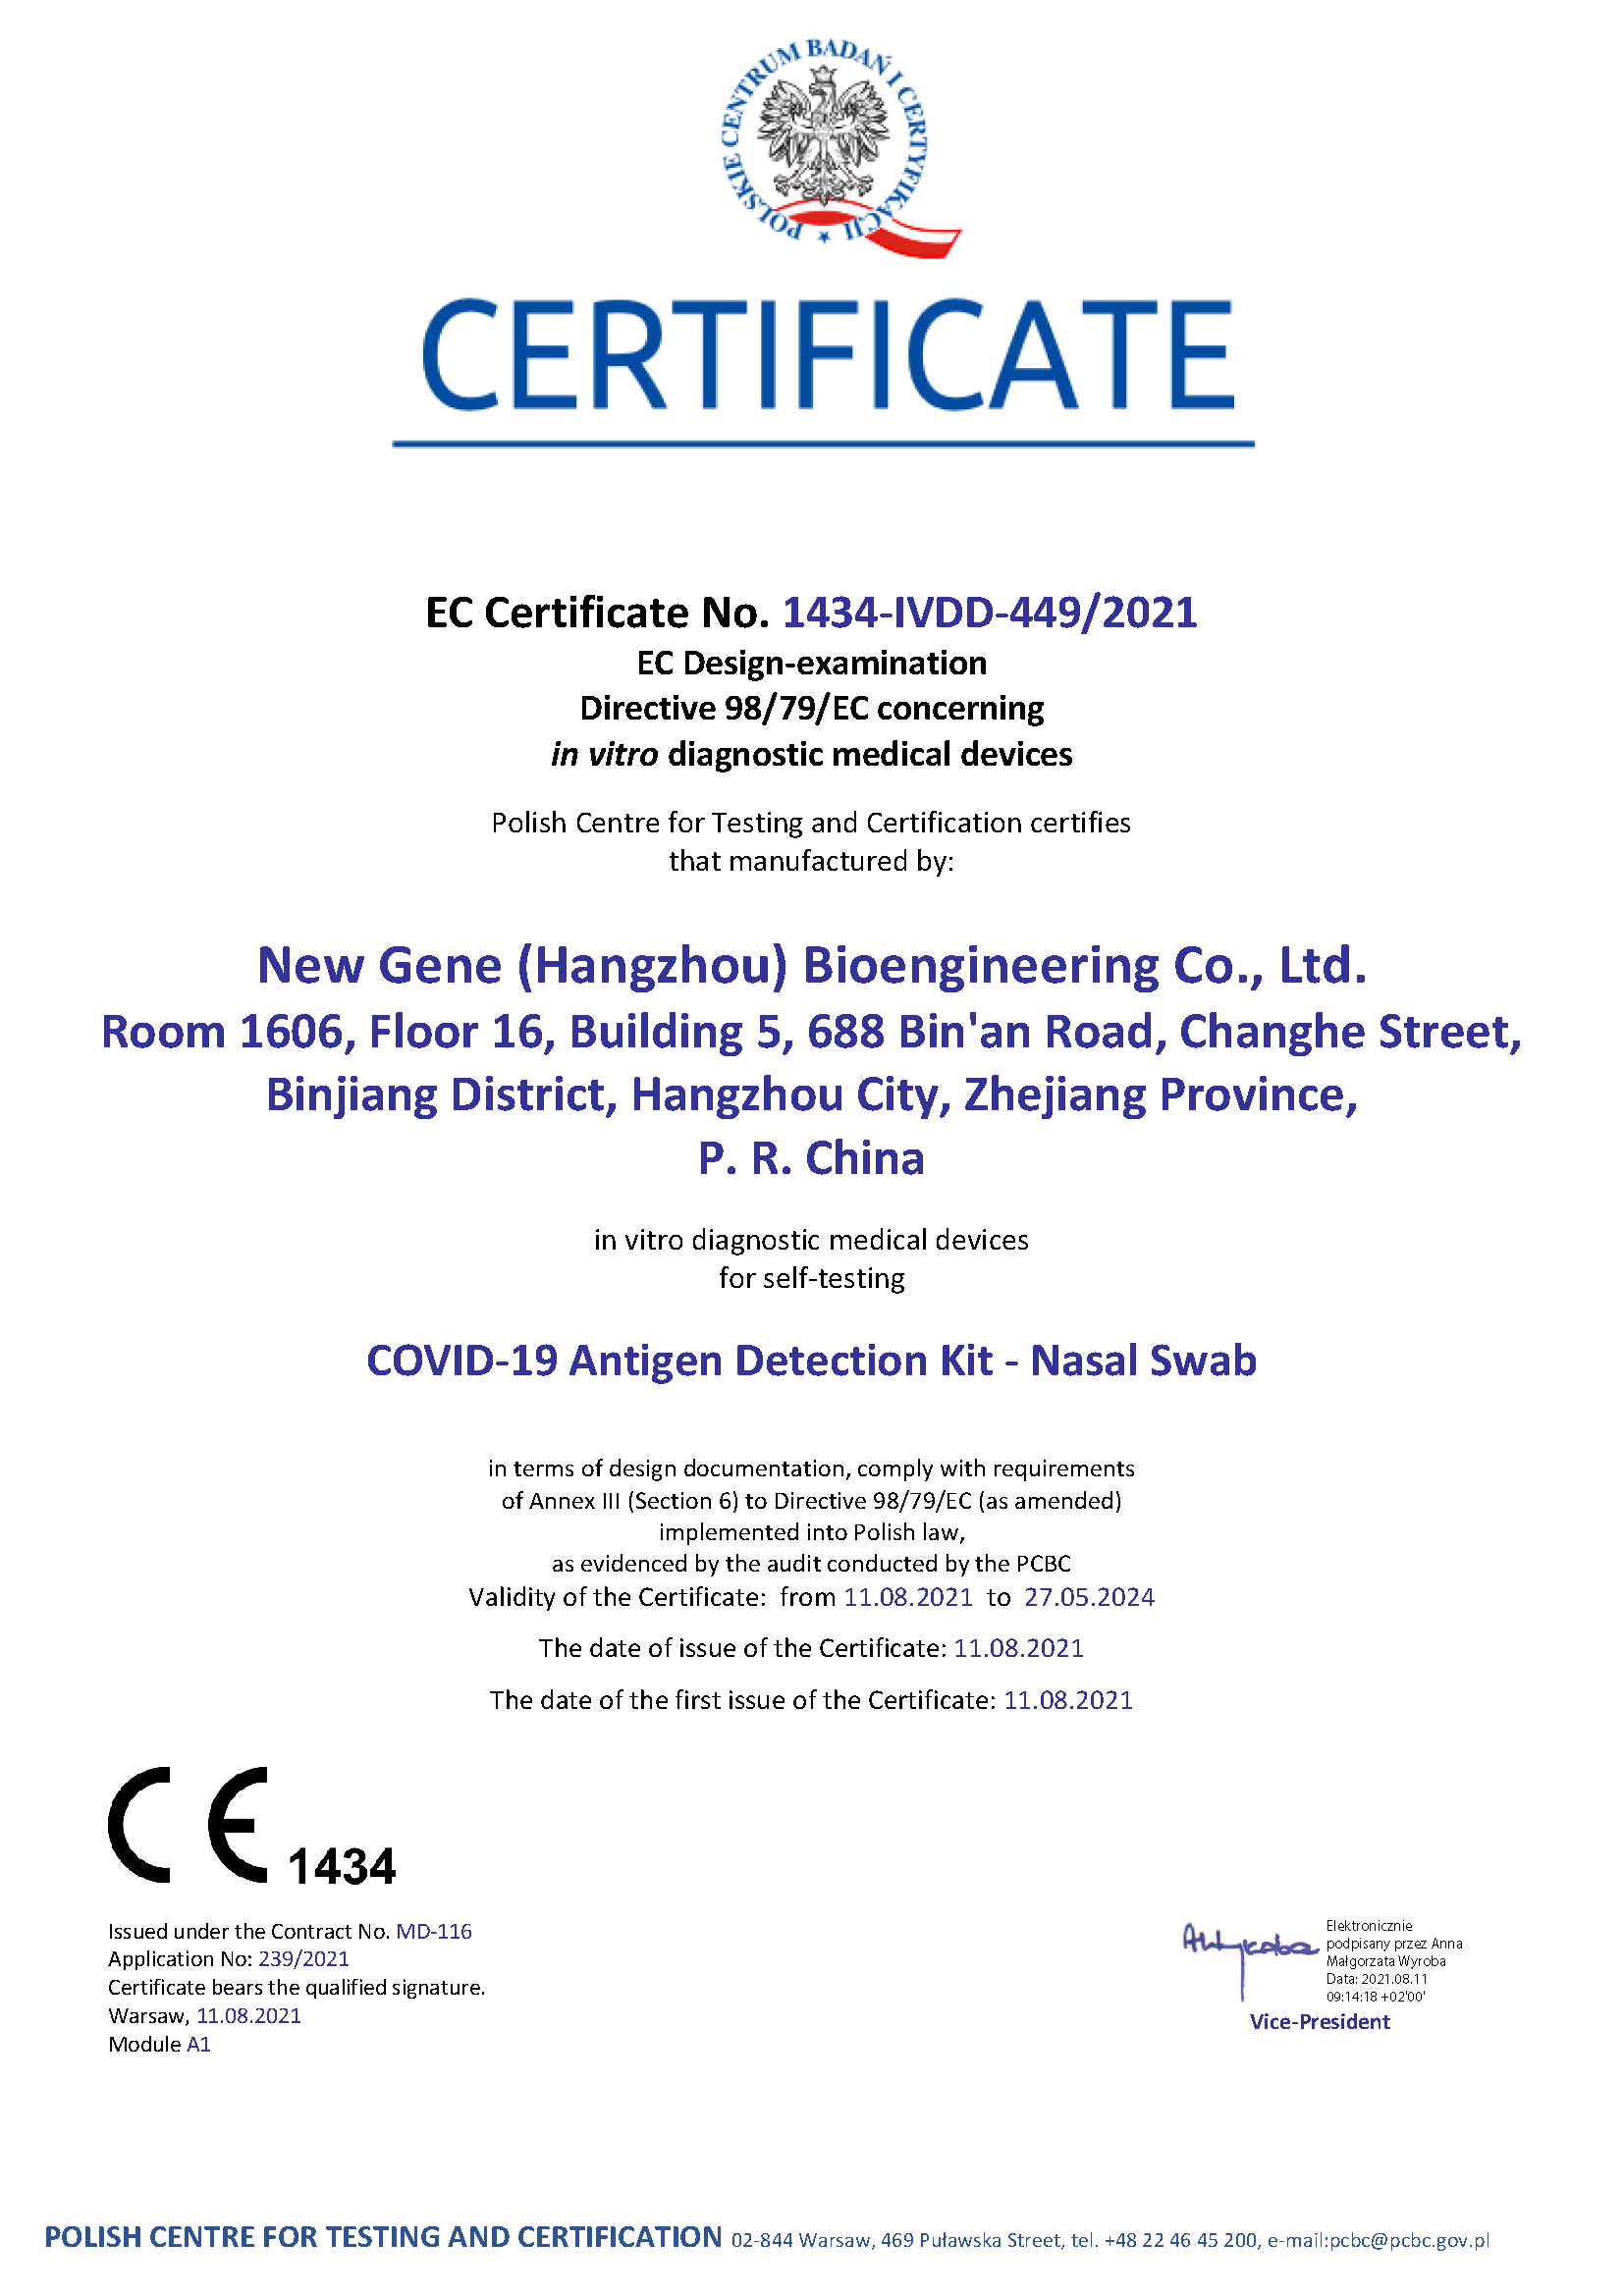 Új gén COVID-19 antigén-észlelő készlet – Önteszt-tanúsítvány (PCBC 1434)